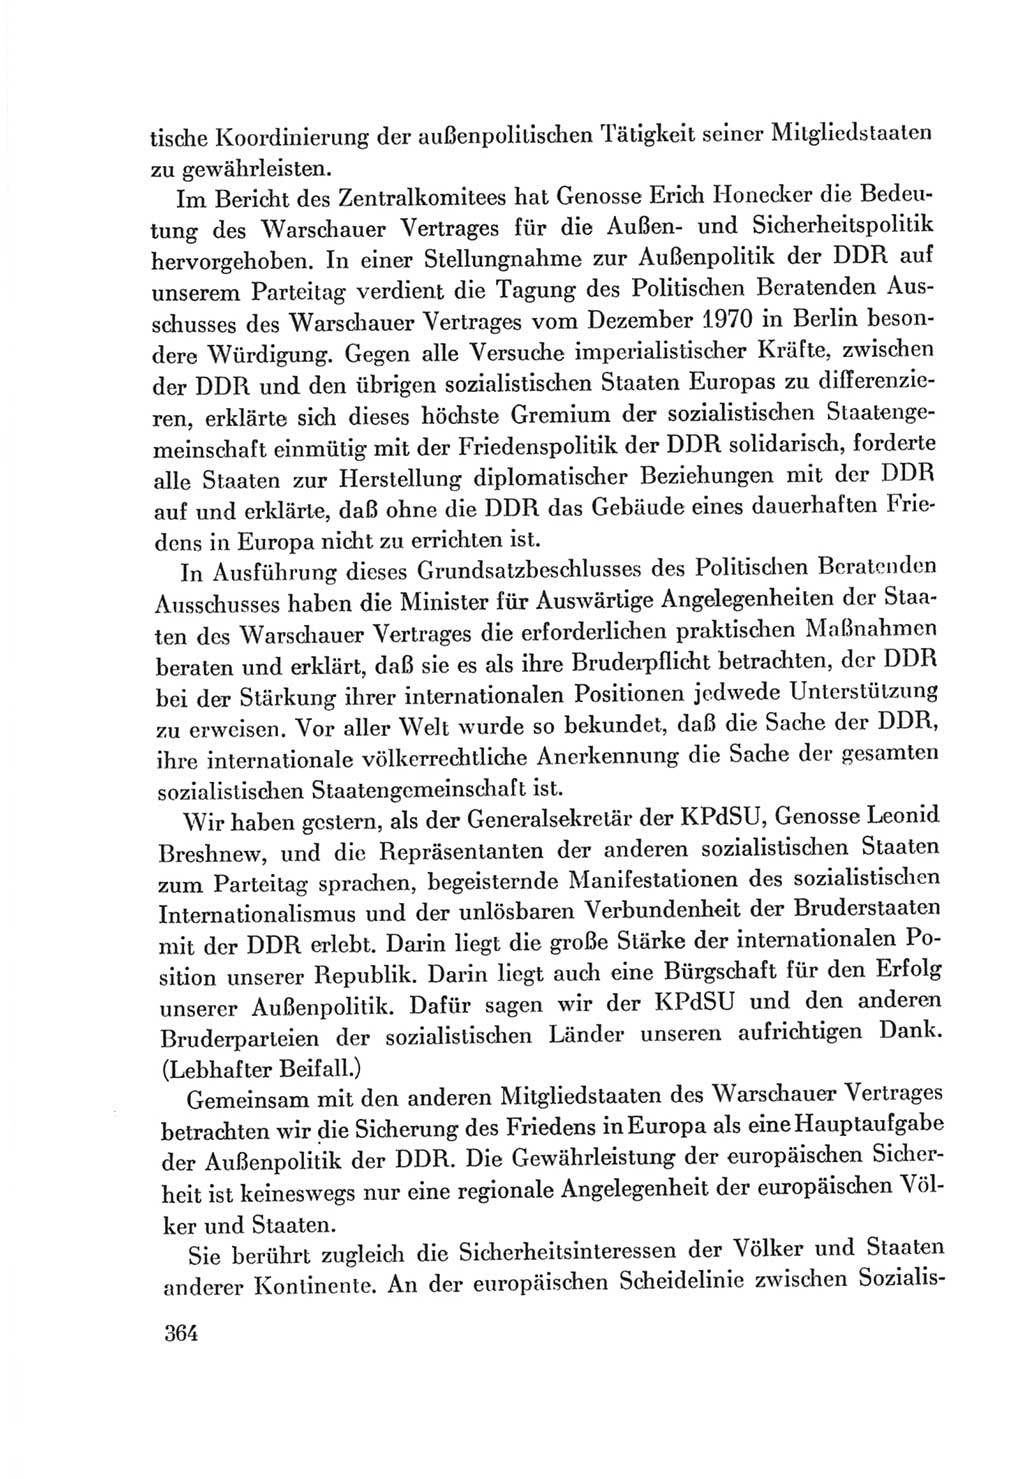 Protokoll der Verhandlungen des Ⅷ. Parteitages der Sozialistischen Einheitspartei Deutschlands (SED) [Deutsche Demokratische Republik (DDR)] 1971, Band 1, Seite 364 (Prot. Verh. Ⅷ. PT SED DDR 1971, Bd. 1, S. 364)